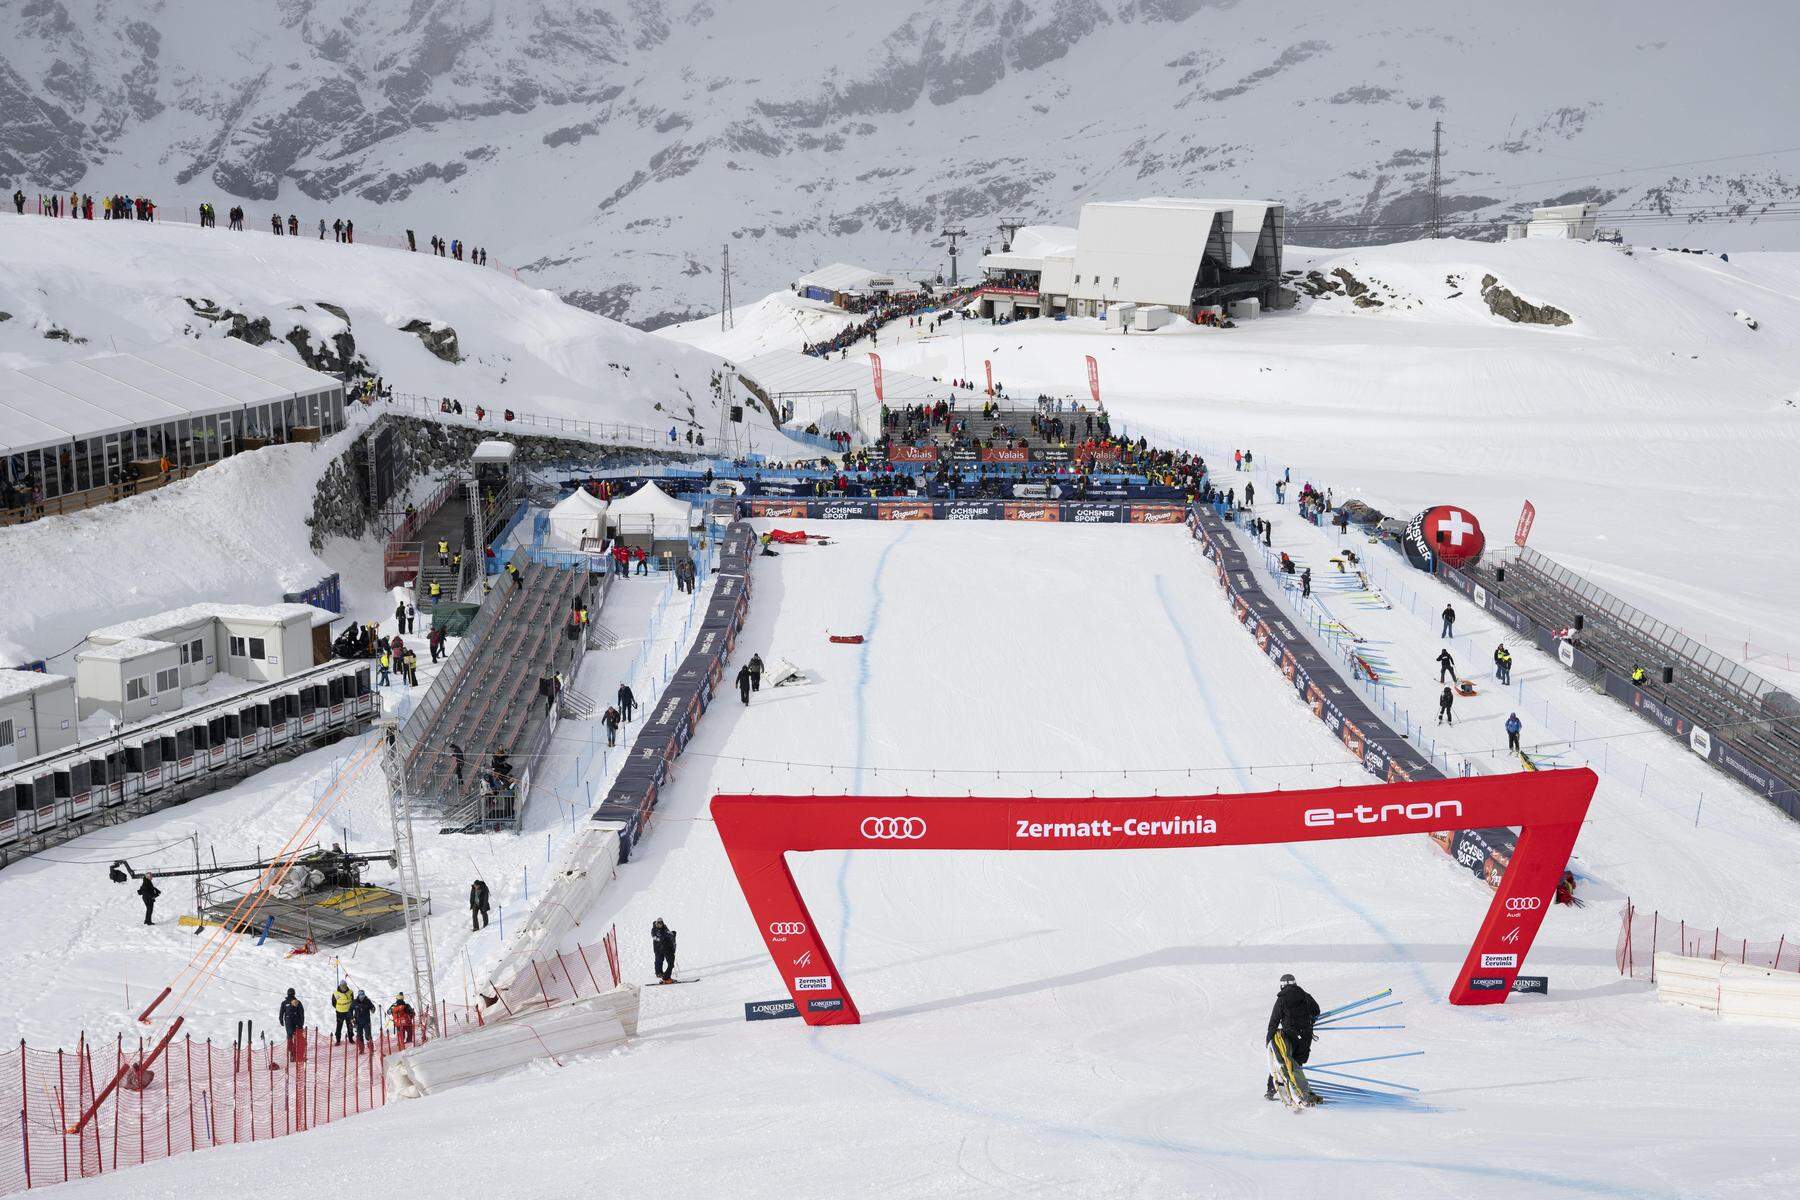 Ski Alpin: Nach zwei Jahren ohne Rennen: FIS nimmt Zermatt/Cervinia aus dem Kalender